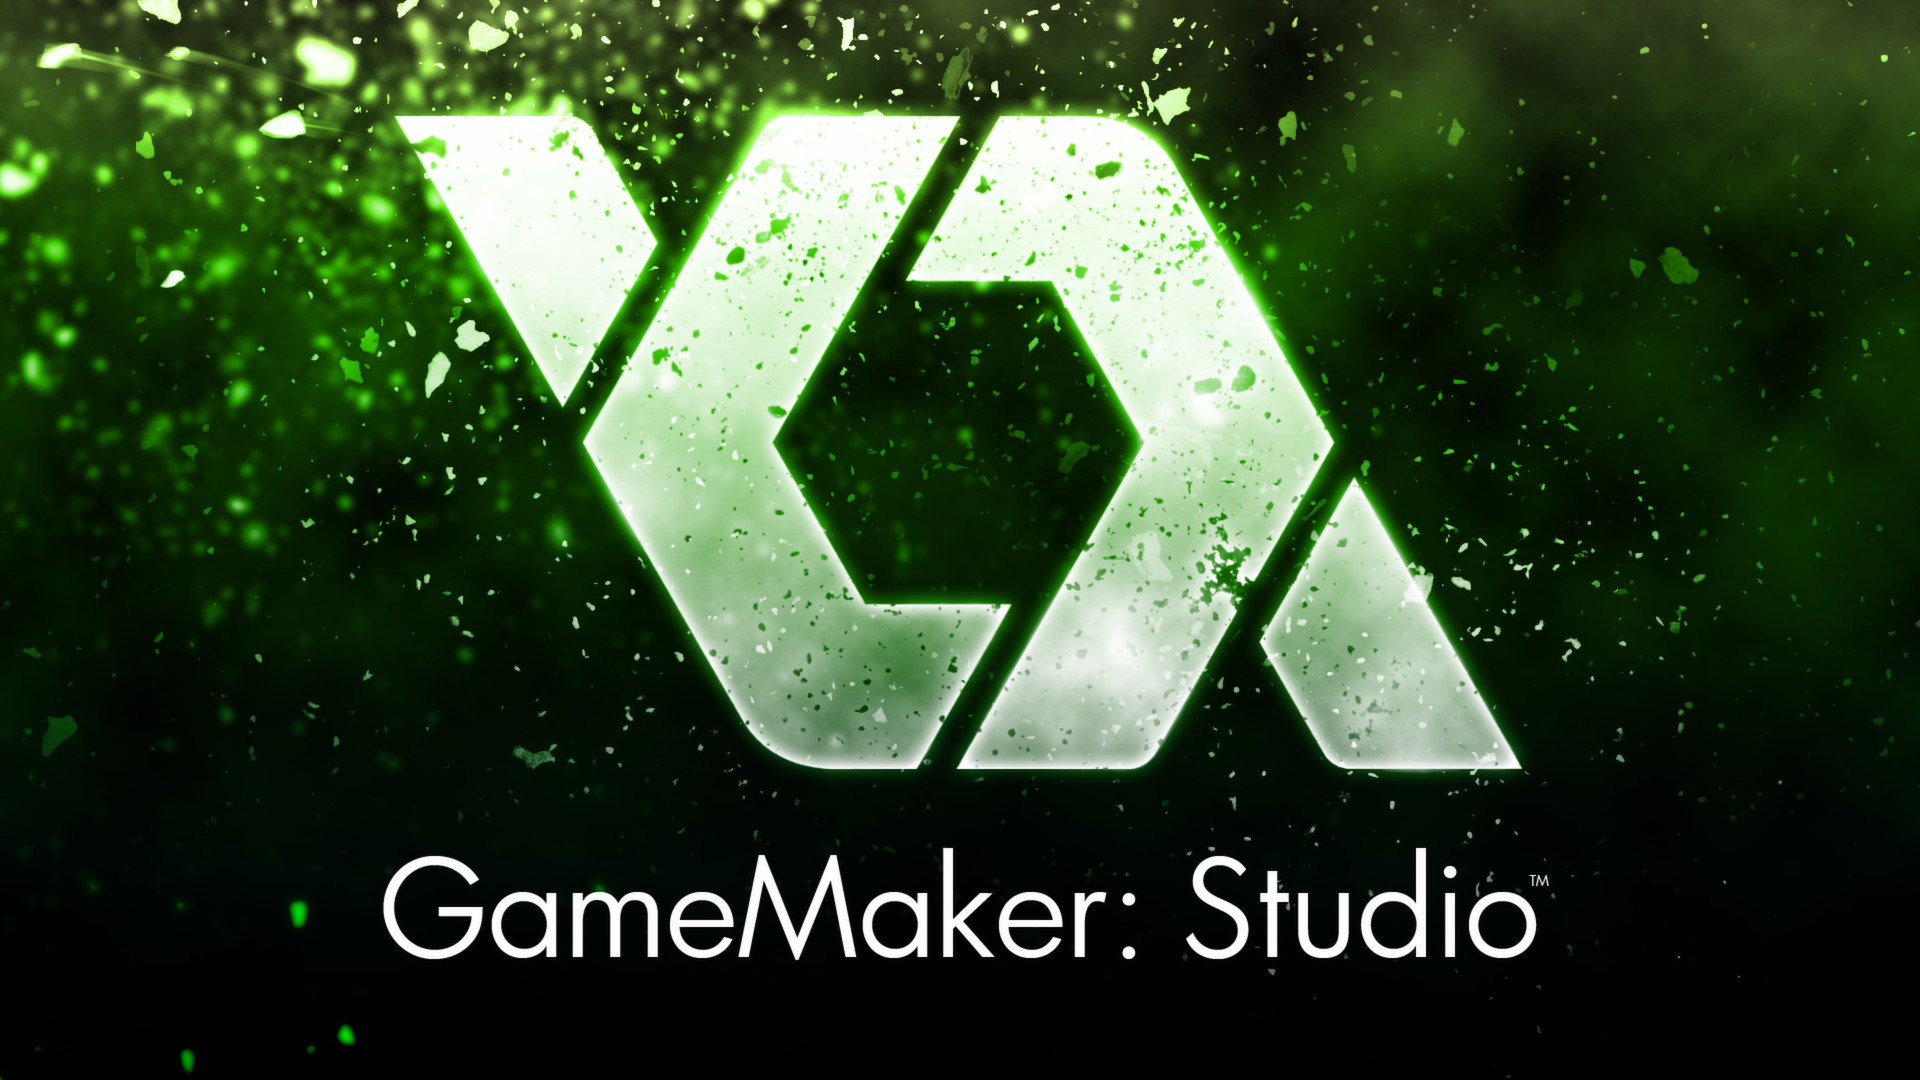 gamemaker studio 1.4 license key